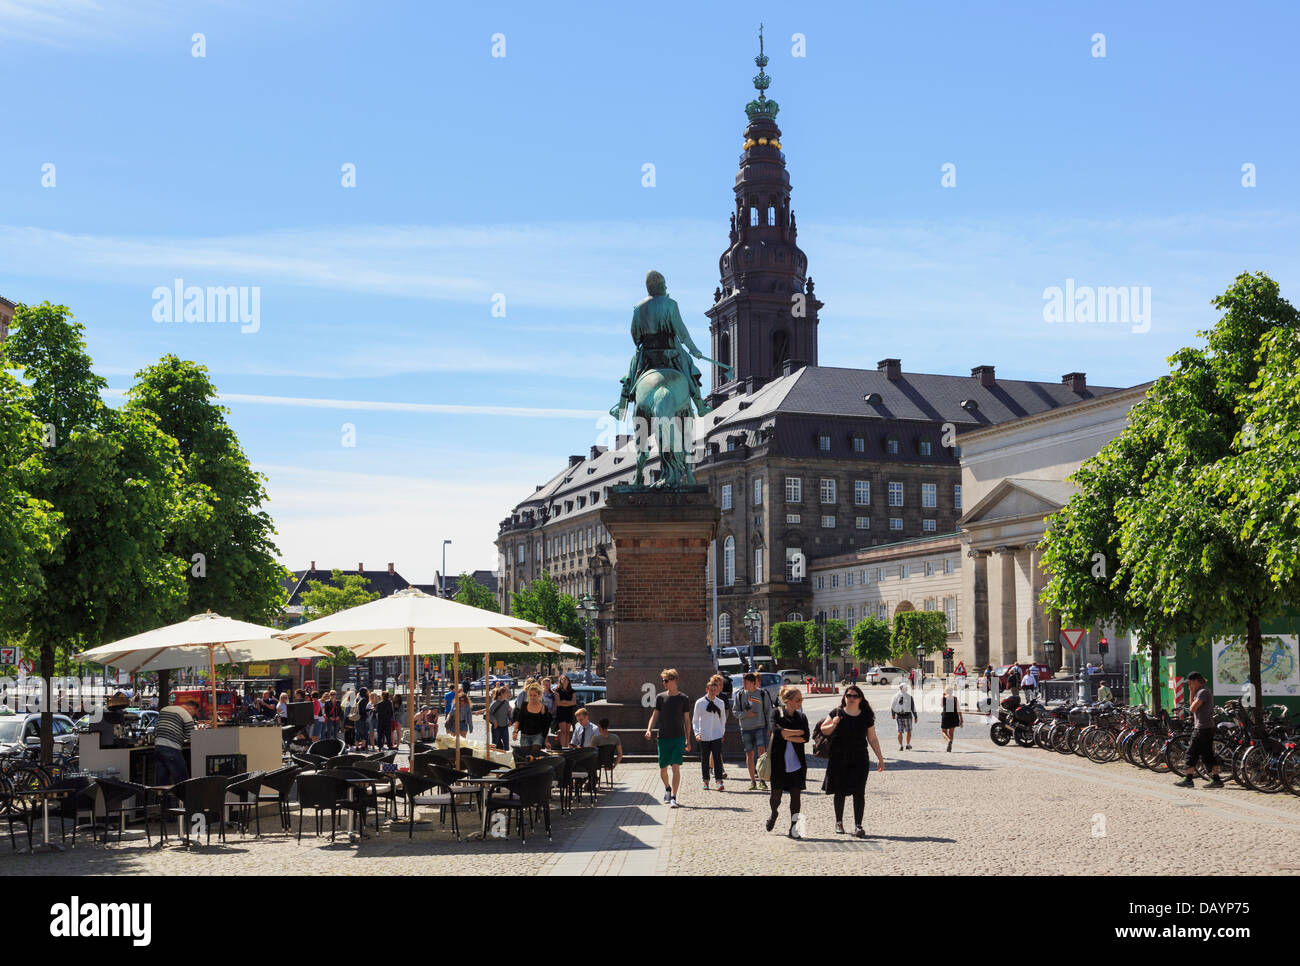 Cafés et statue de l'évêque Absalon à Hojbro Plads avec Palais Christiansborg au-delà. Copenhague, Danemark, Nouvelle-Zélande Banque D'Images